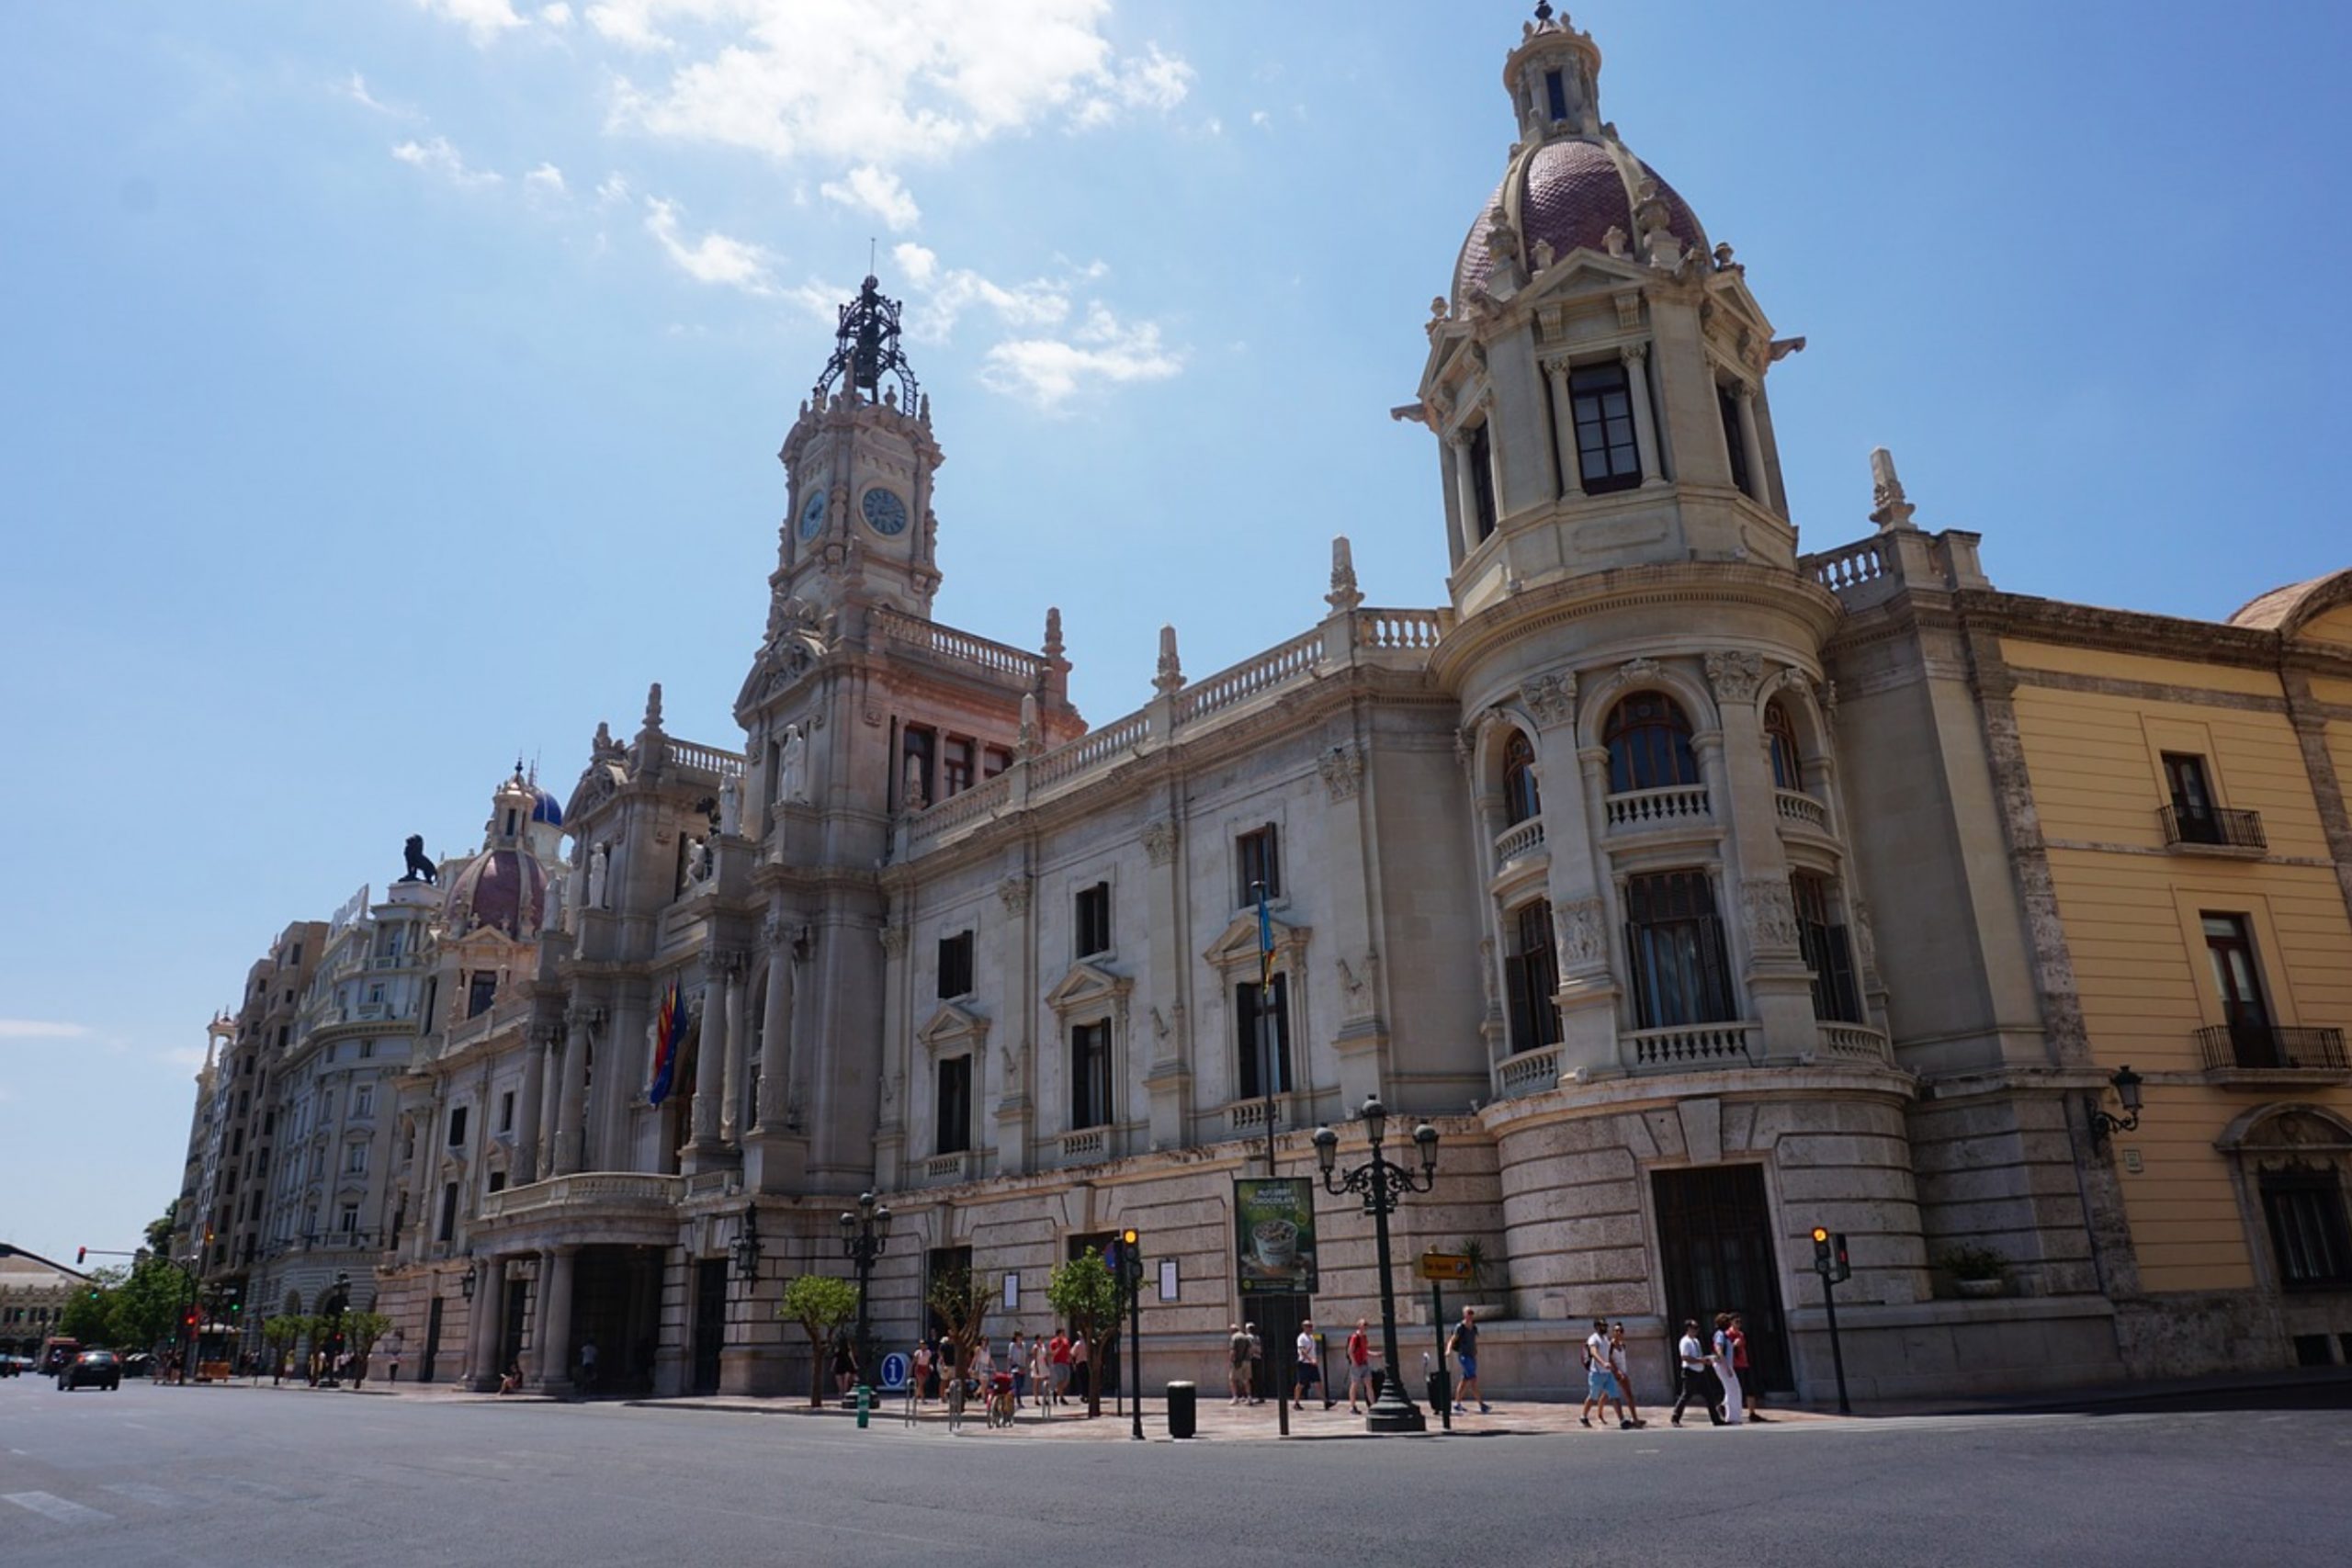 Valencia city hall - Plaza del Ayuntamiento